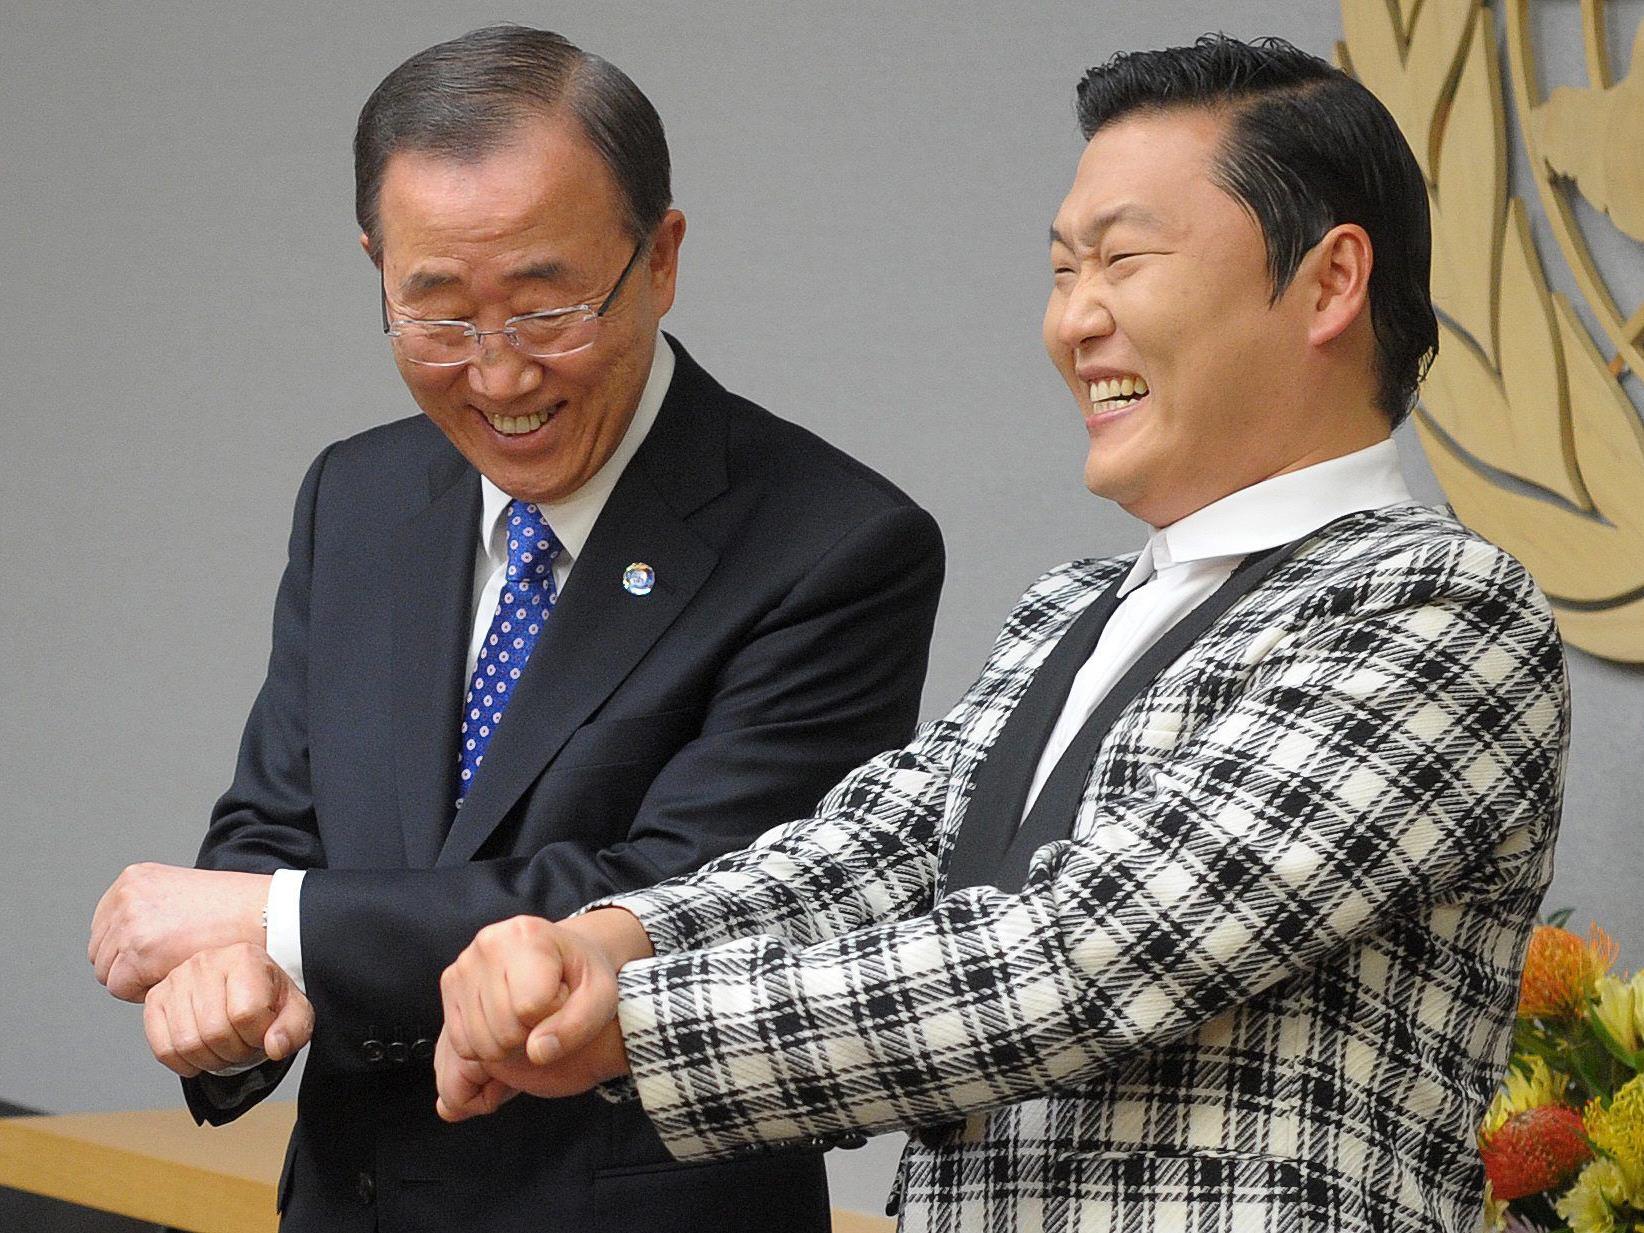 Der UN-Generalsekretär versucht sich im neuen Mode-Tanz